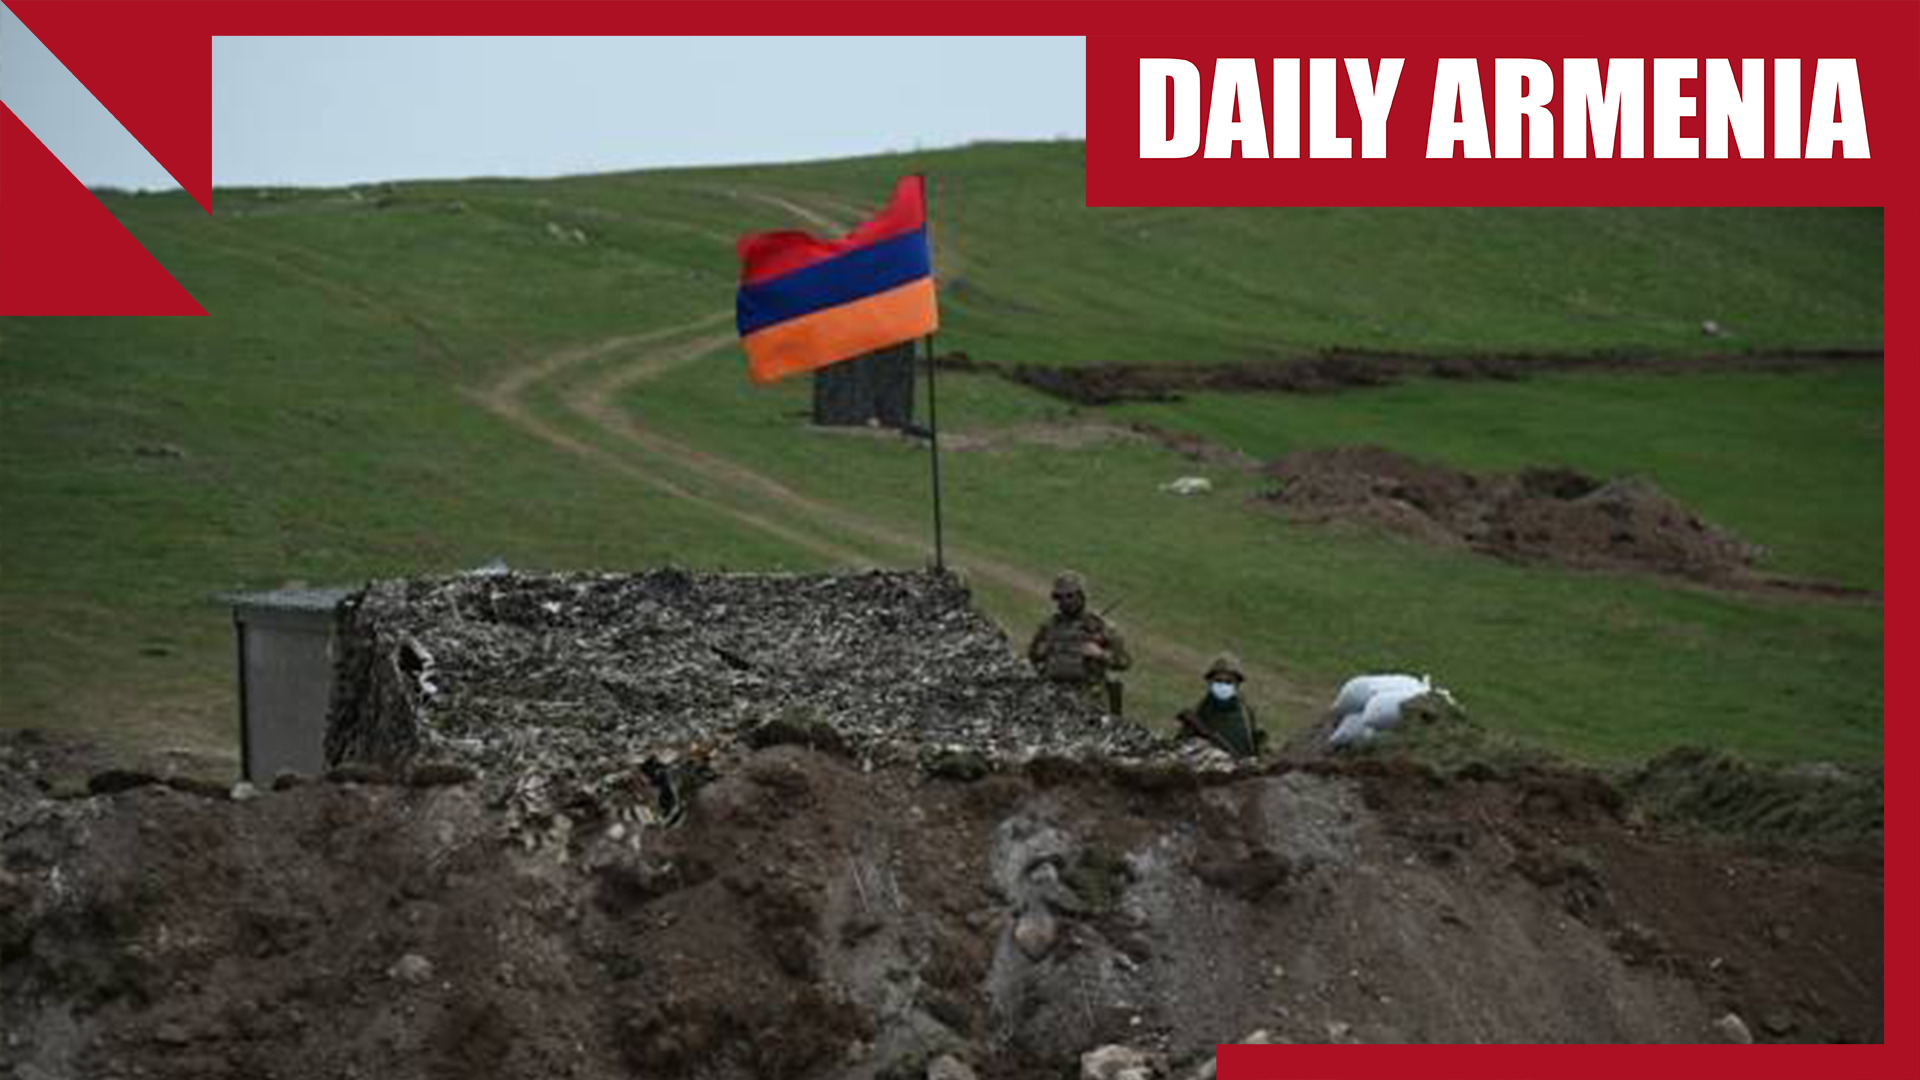 Azerbaijan moves troops, escalating fear of new war in region